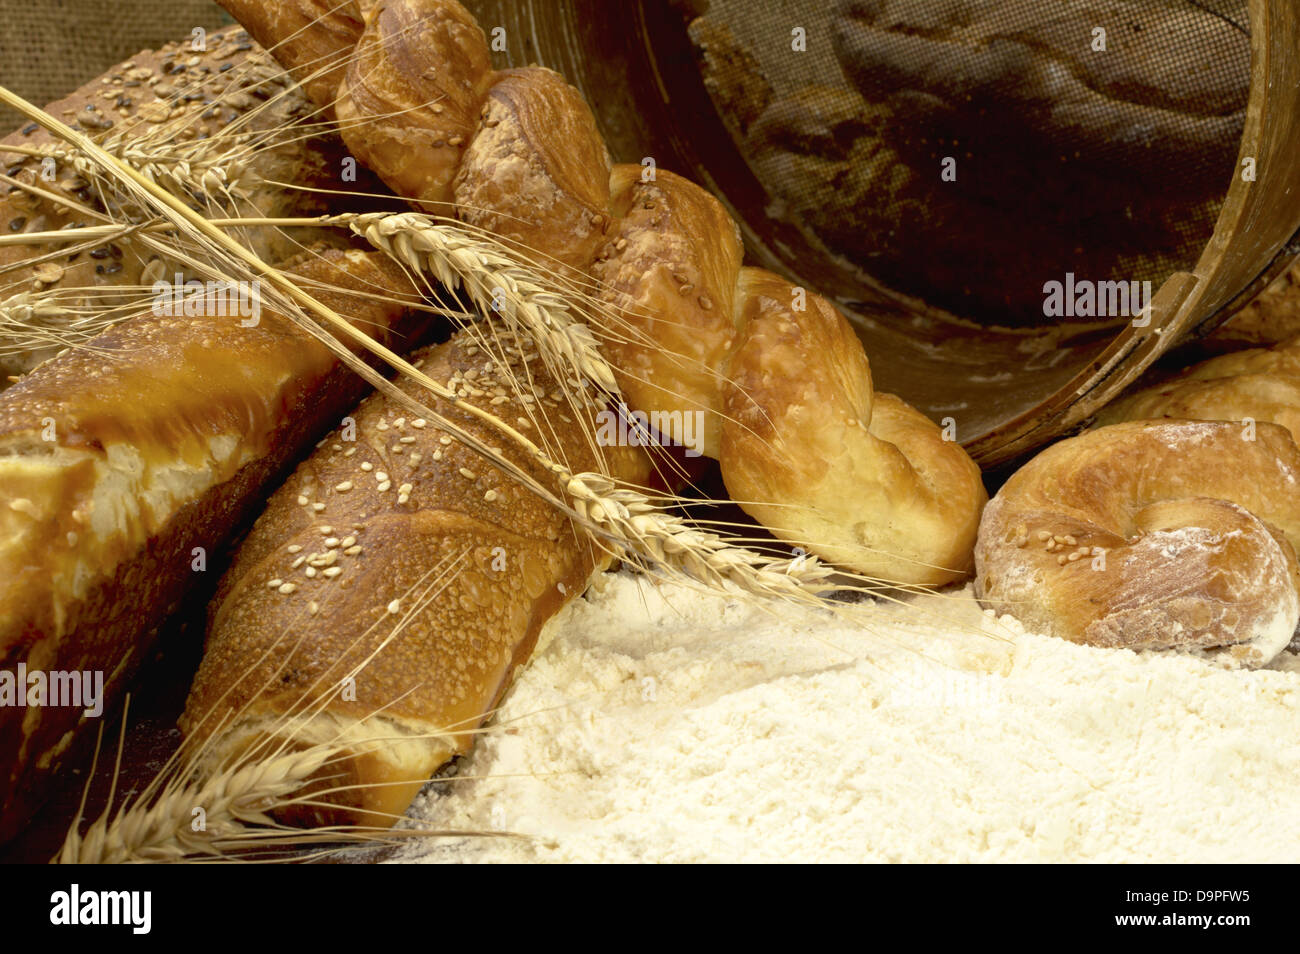 Lecker frisch knackig und warm hausgemachtes Brot. Stockfoto